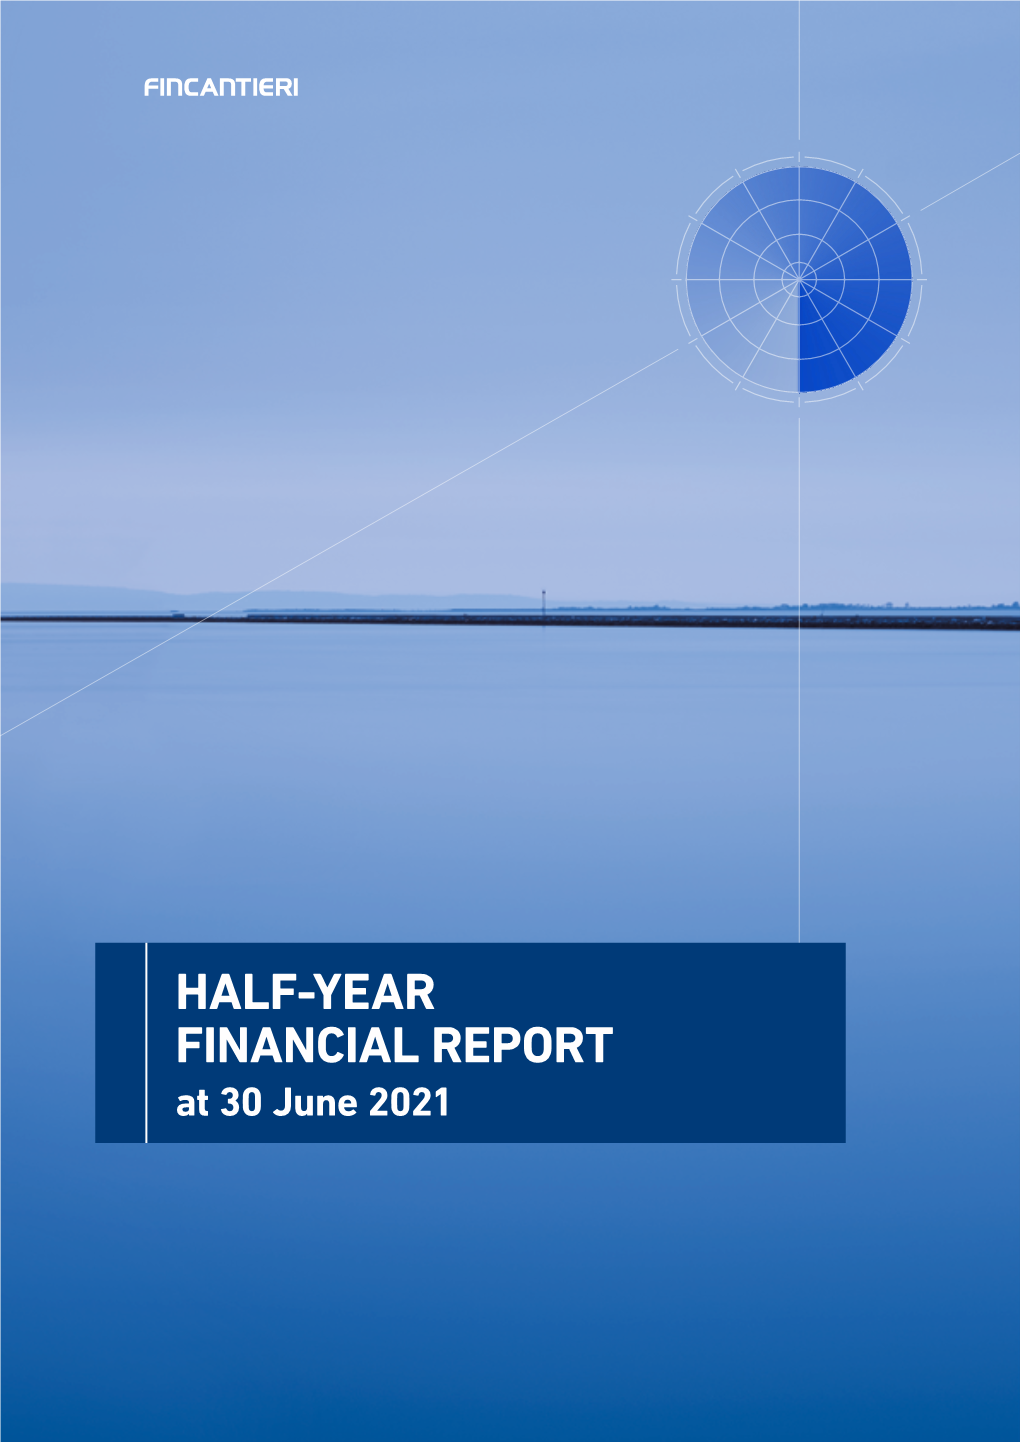 Half-Year Financial Report at June 30, 2021